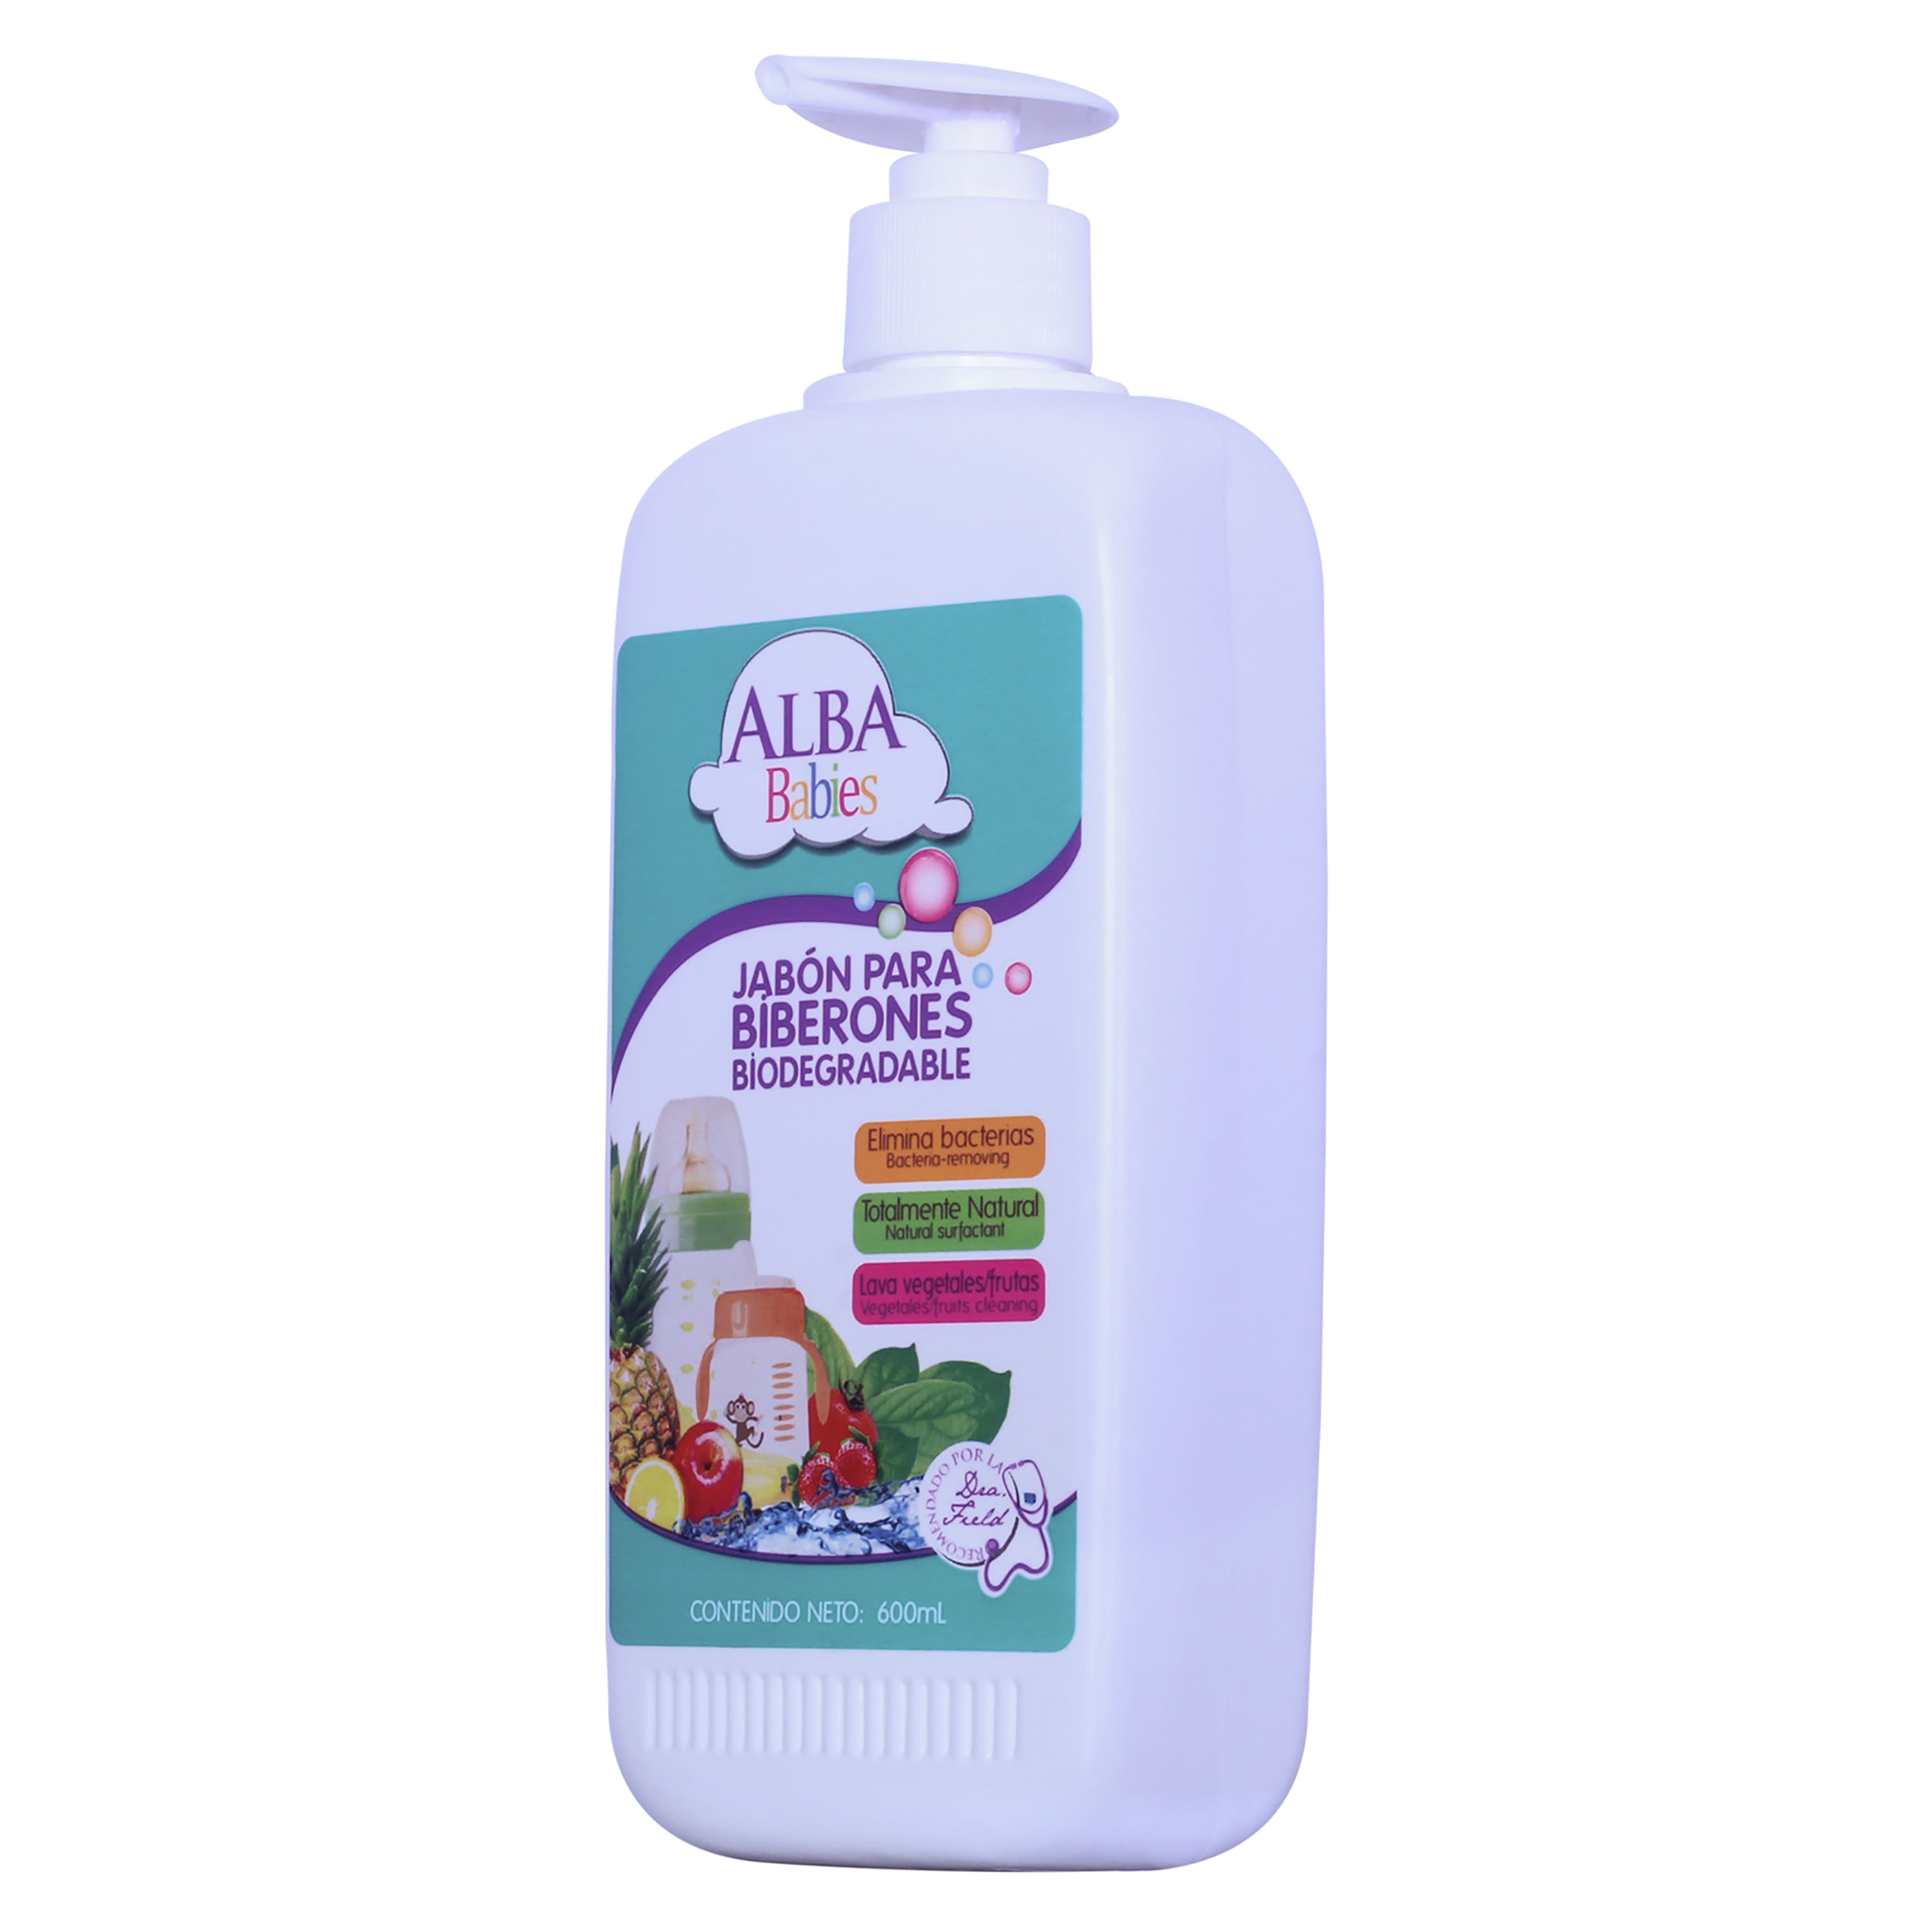 Comprar Jabón Para Biberones Alba Babies, Biodegradable, Natural